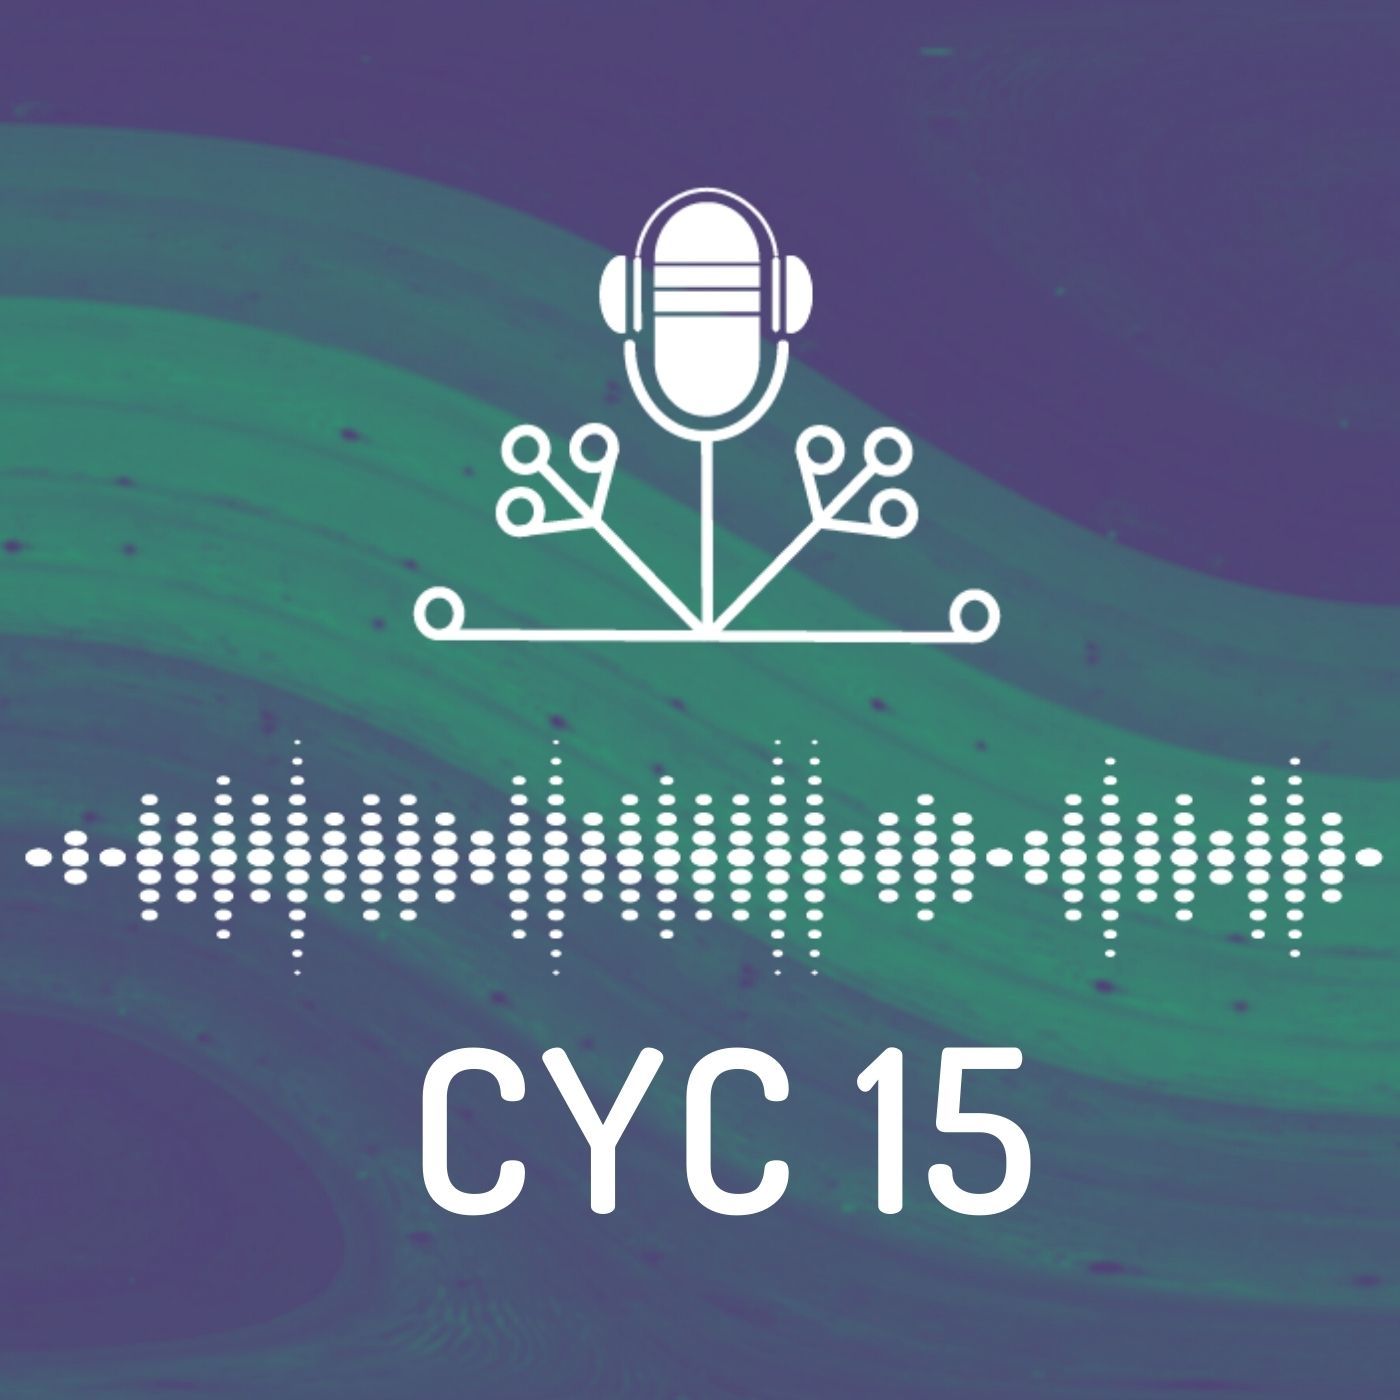 CYC 15